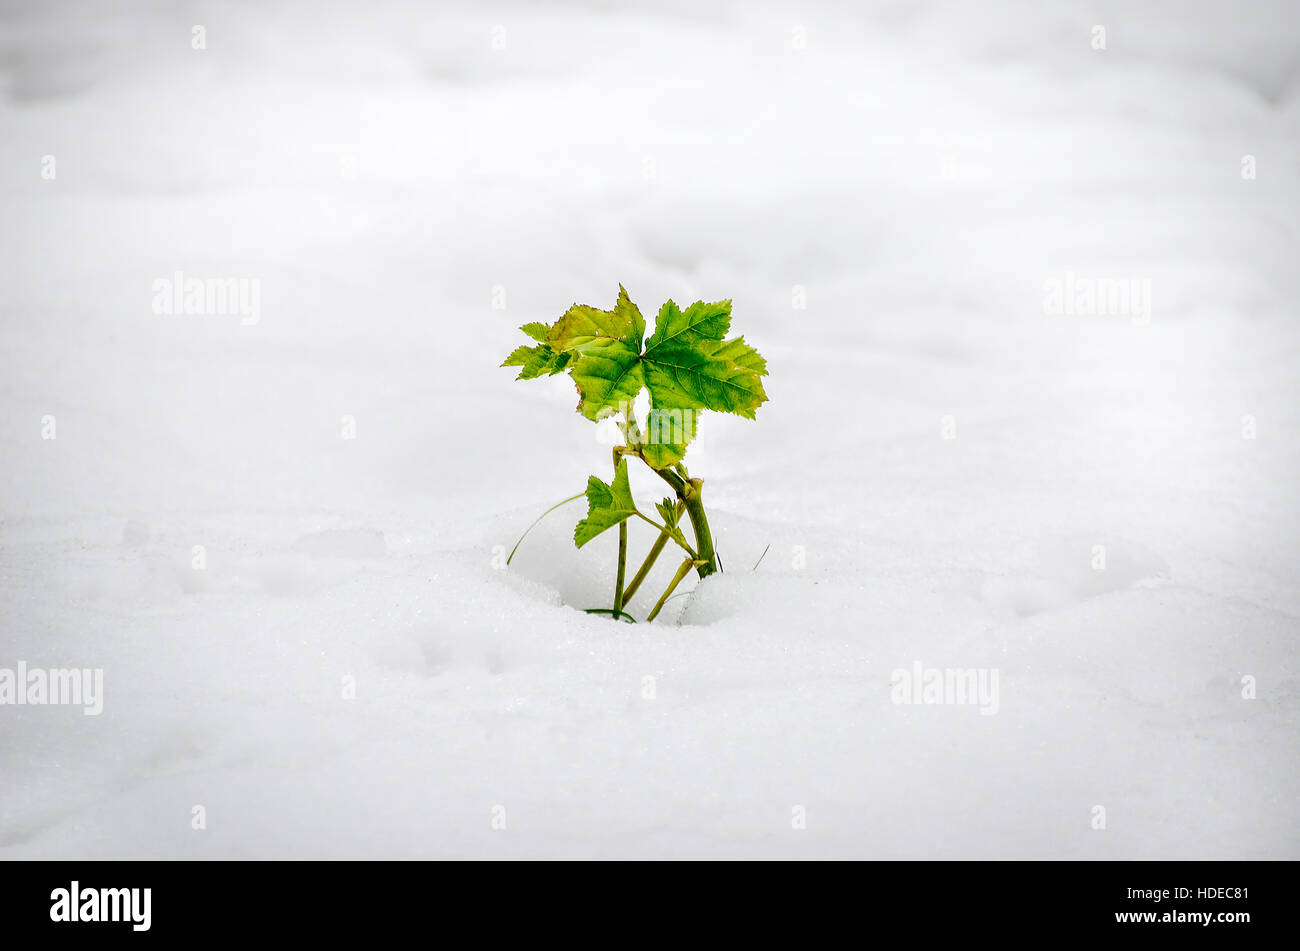 Pflanze wachsen Schnee vignette Stockfoto